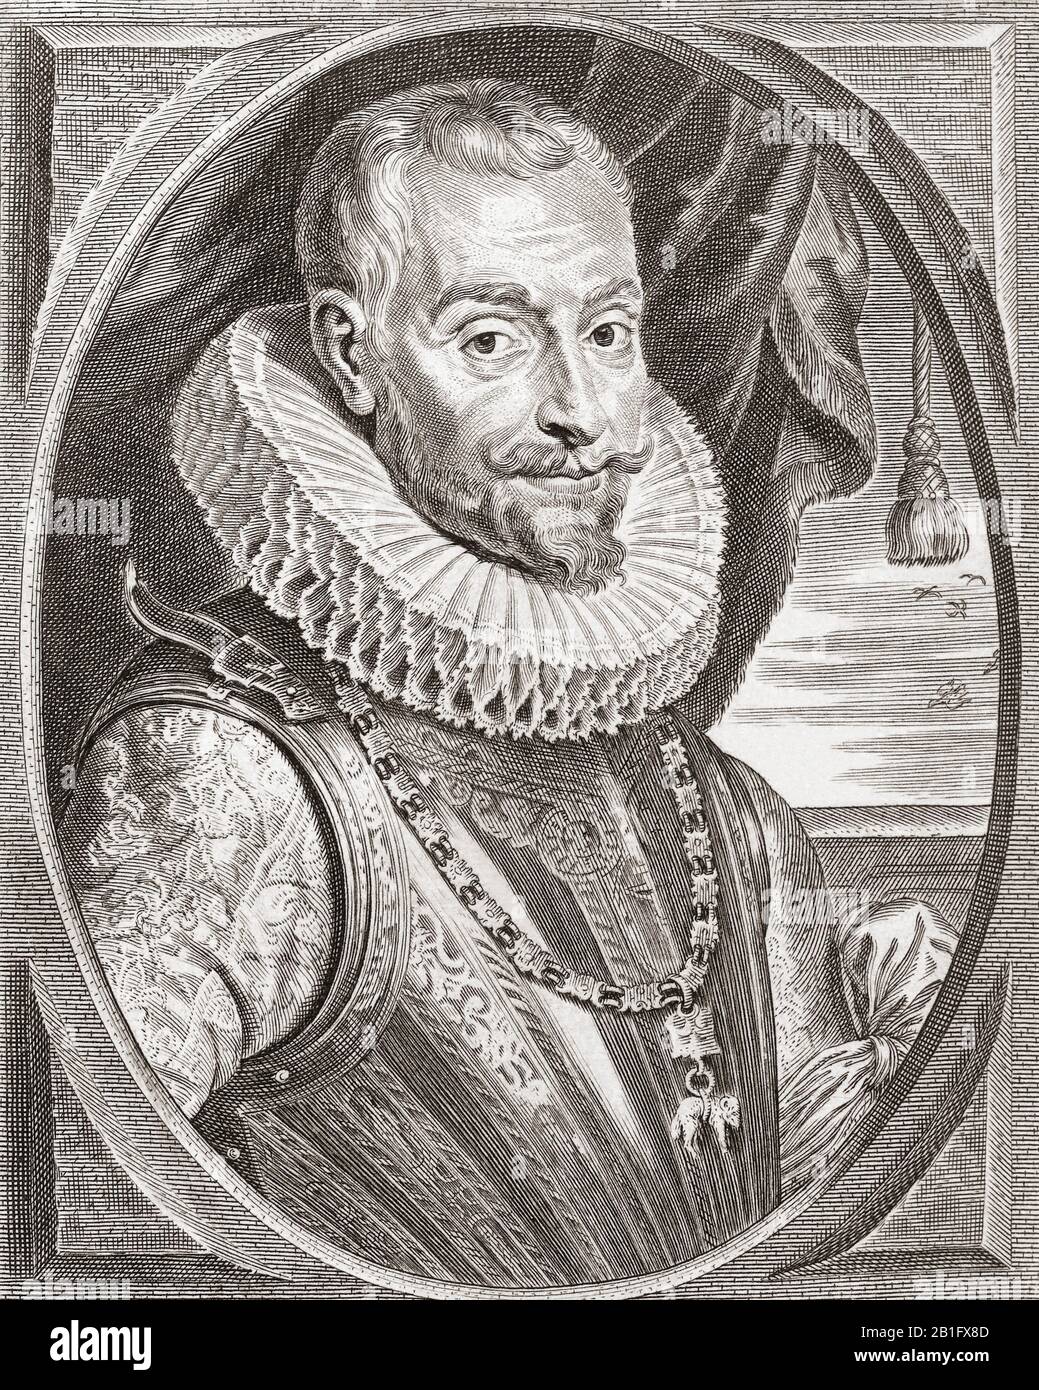 Ambrogio Spinola Doria, 1. Marquess of The Balbases, 1569 - 1630. Italienischstämmiger Adeliger, der Spanien während des Achtzigjährigen Krieges diente. Stockfoto